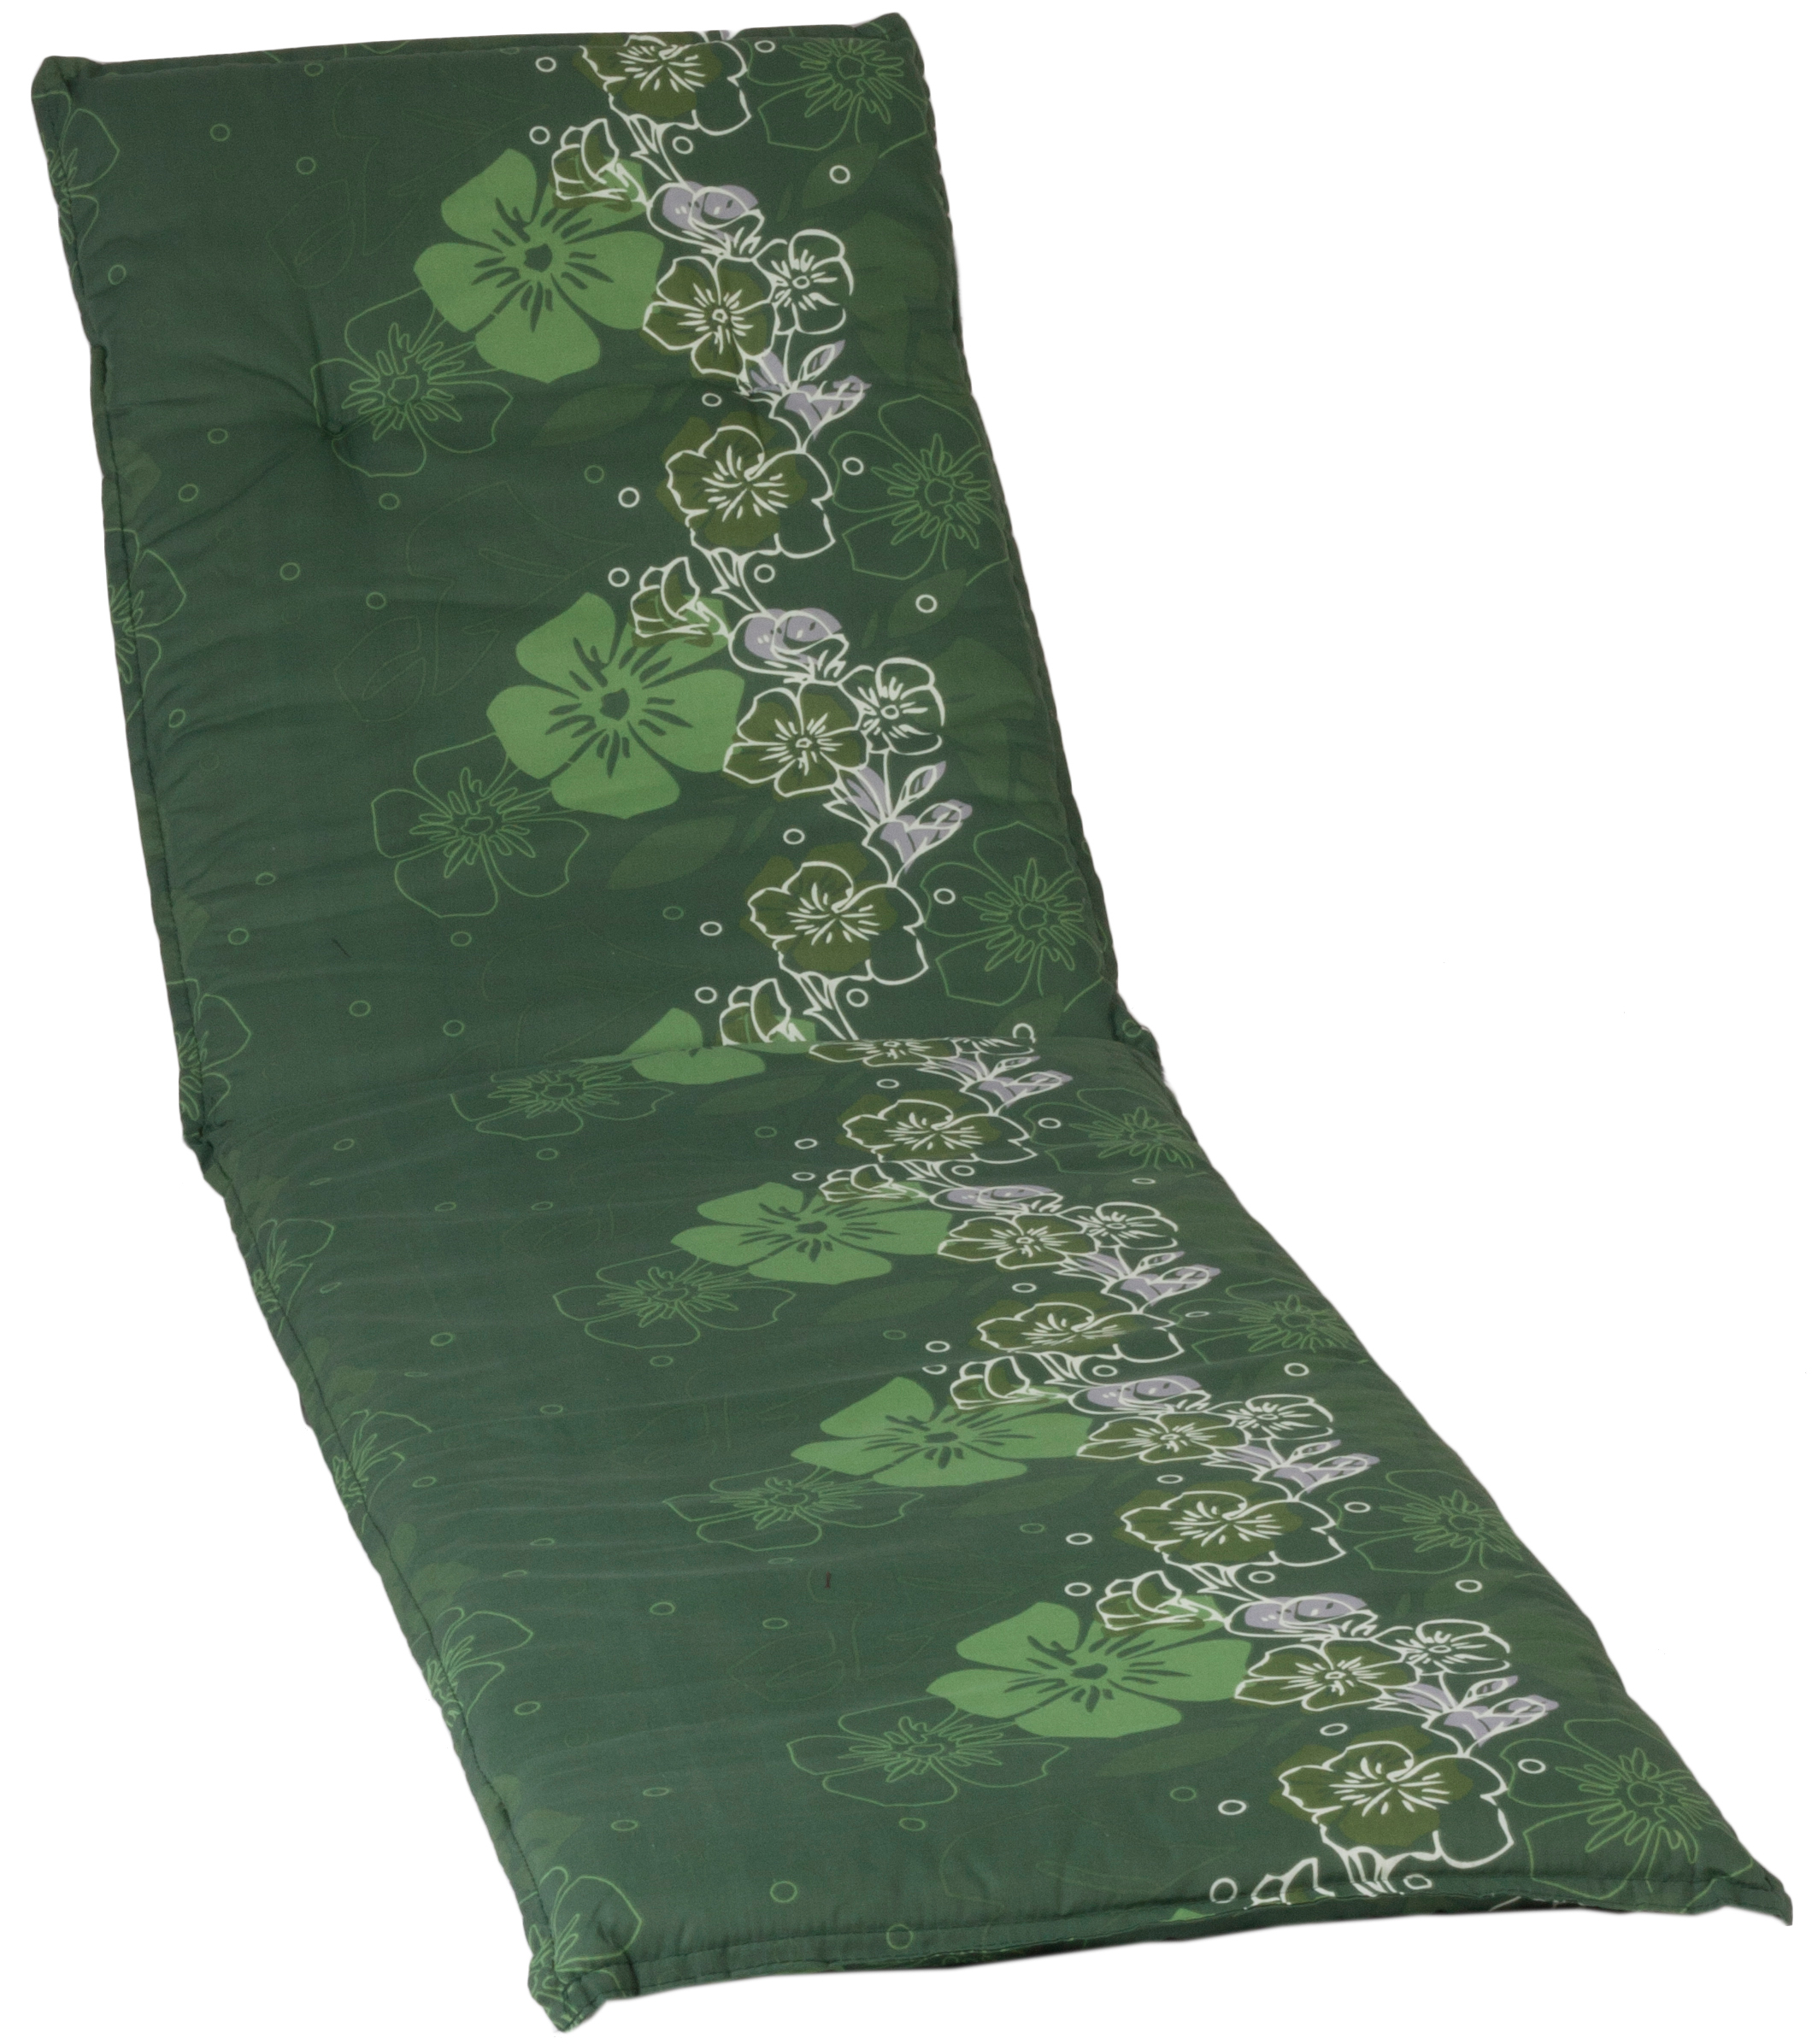 Gartenliege Kissen mit Blumen Motiv in mehreren grün Tönen